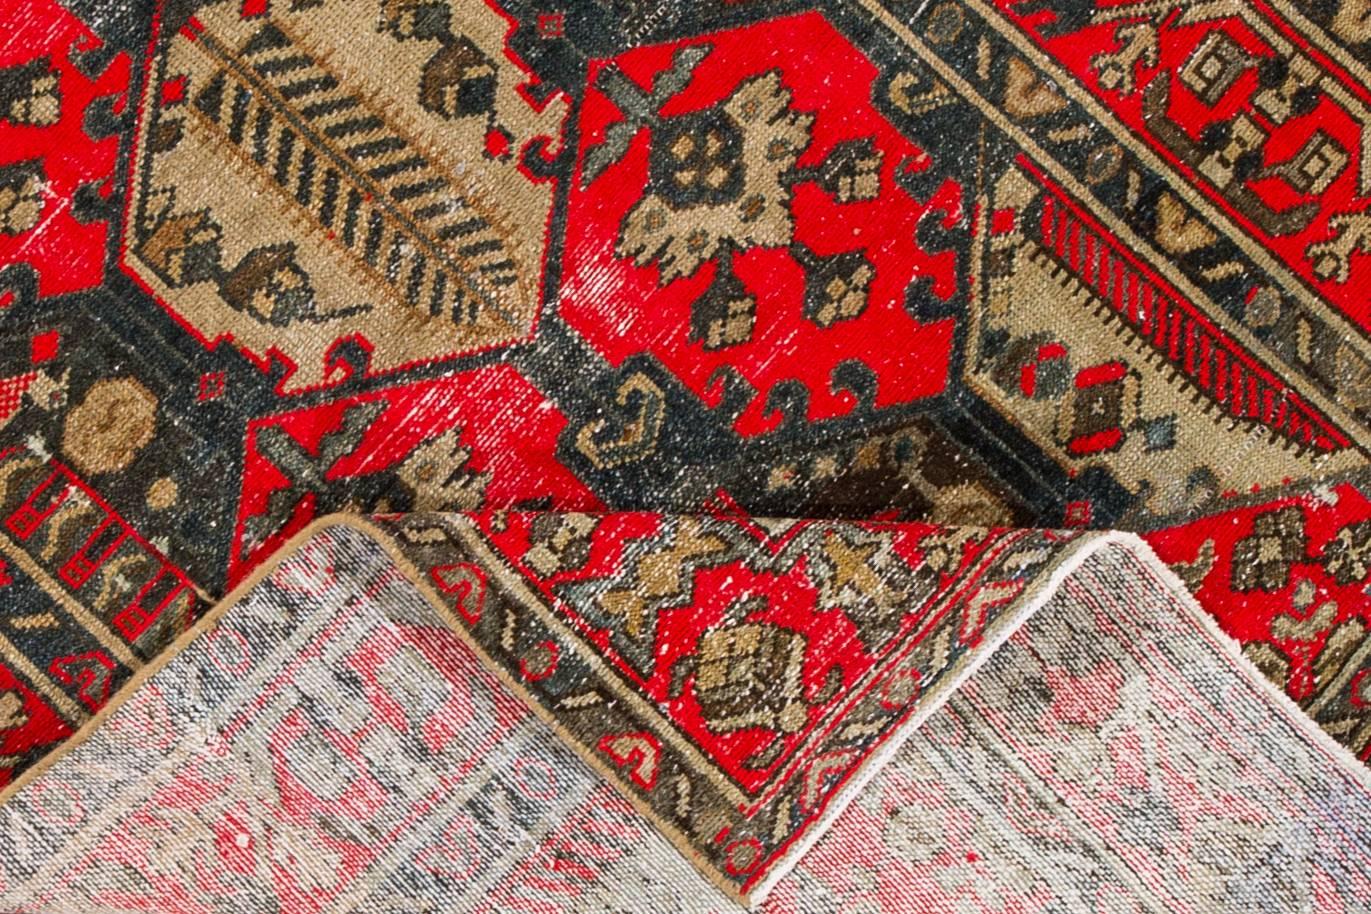 Persischer Täbriz-Teppich aus den 1930er Jahren. Dieses gealterte Stück zeigt ein leuchtend rotes Feld und ein geometrisches Muster in Braun, das mit Cremetönen akzentuiert ist. Maße: 4 x 6.08.